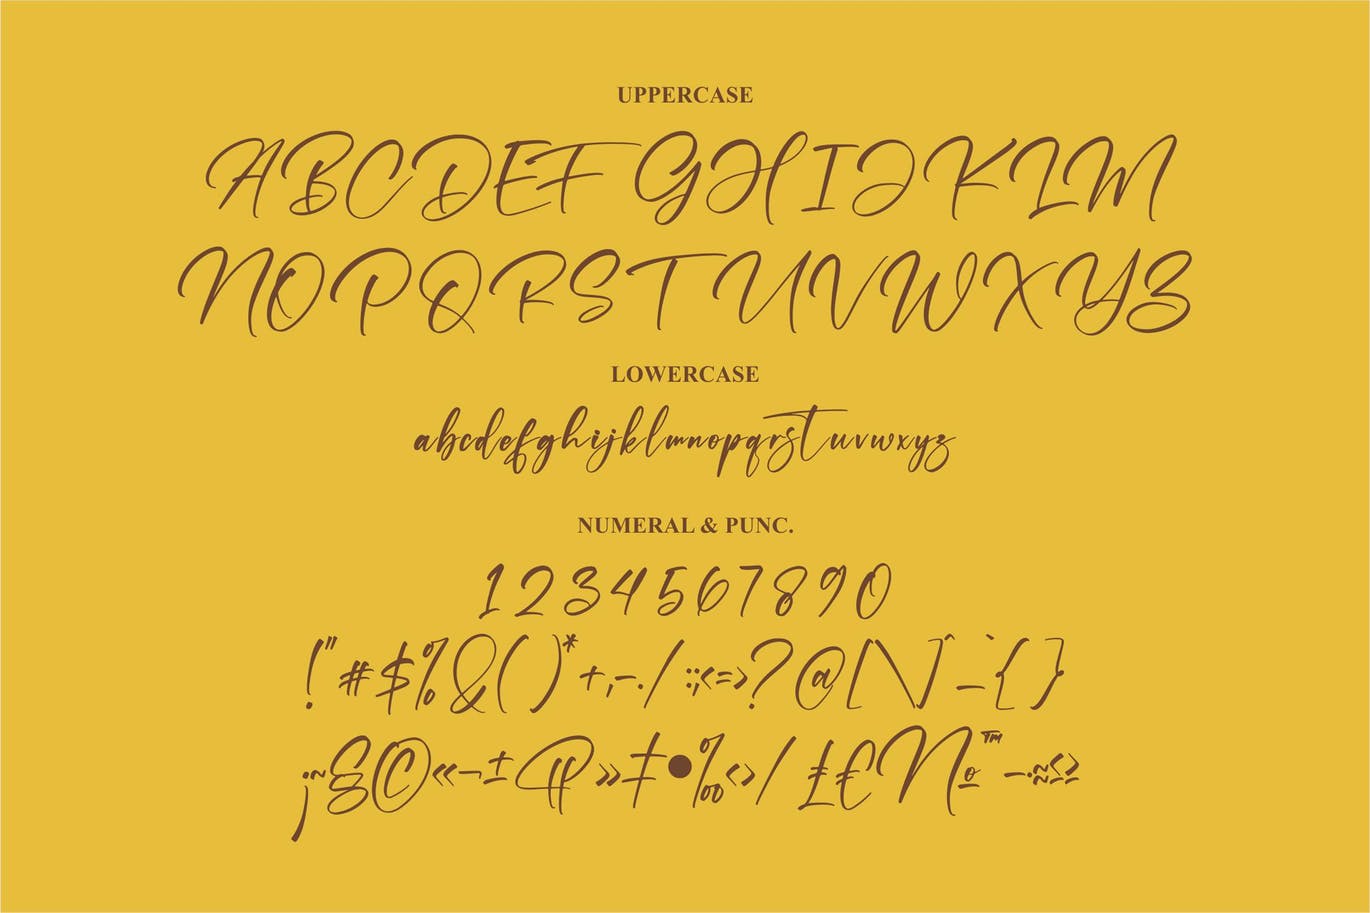 艺术个性签名字体素材 Hayrittius Signature Font 设计素材 第2张